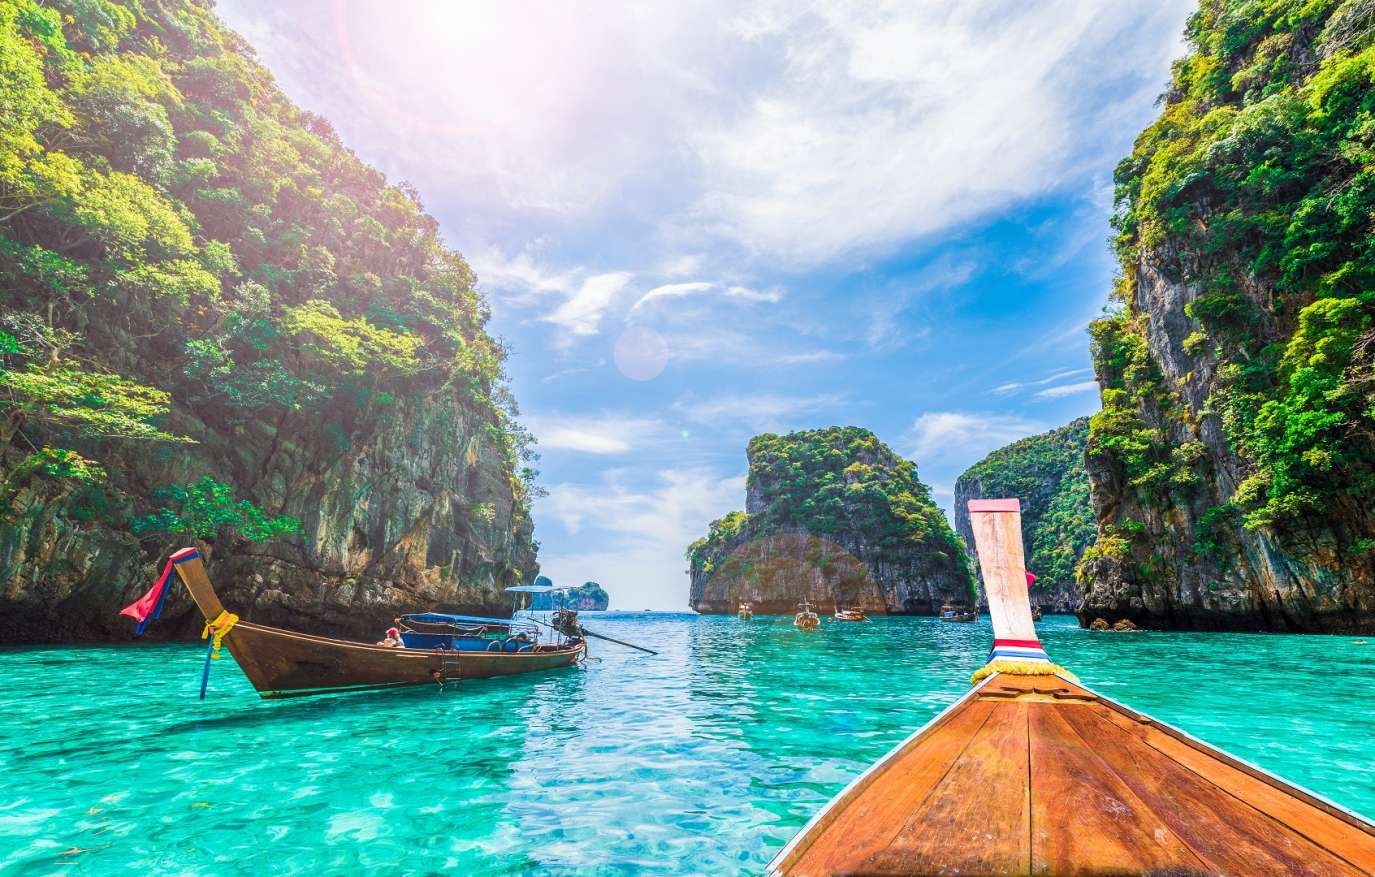 وجهات غنية بالعناوين والنشاطات السياحية في جنوب شرق آسيا